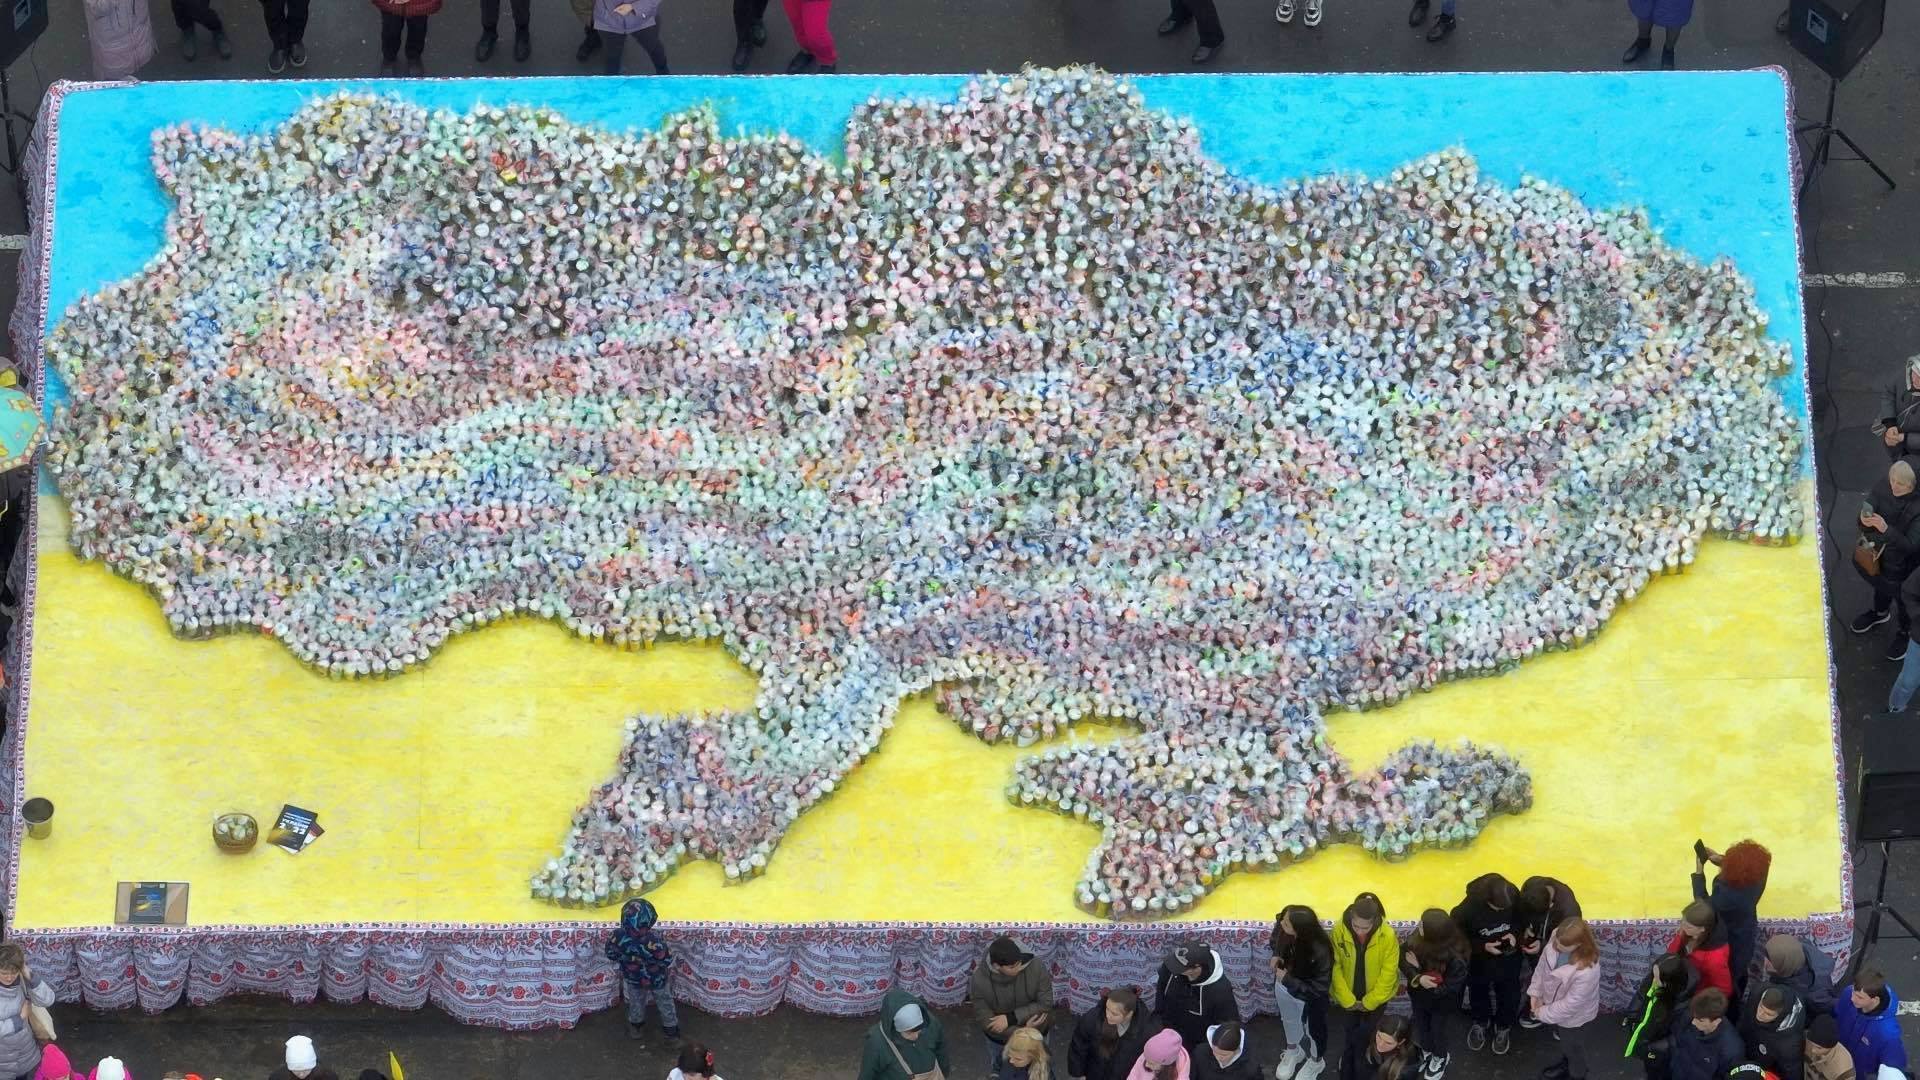 Найбільша мапа України із великодніх пасок для ЗСУ була створена у Подільську Одеської області. Фото: facebook.com/Вєтрова Лана